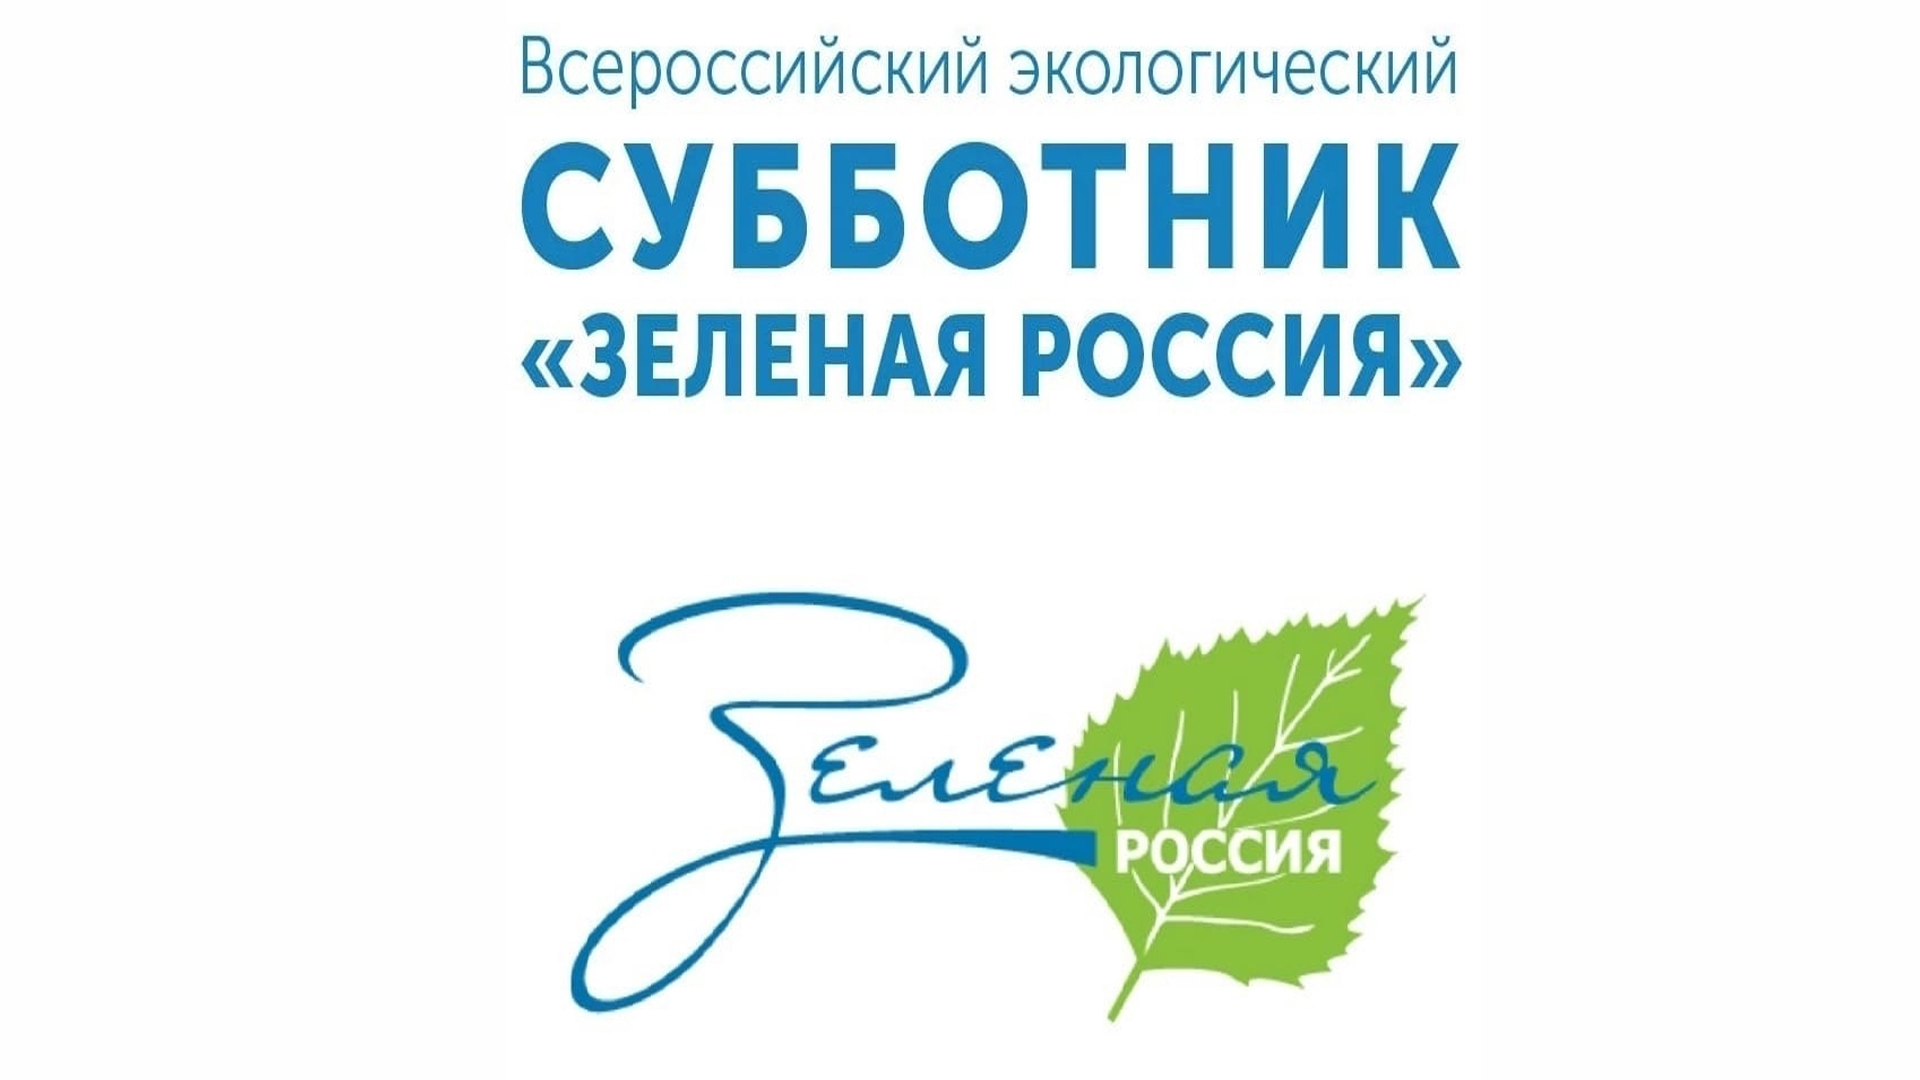 Акция «Всероссийский экологический субботник «Зеленая Россия».